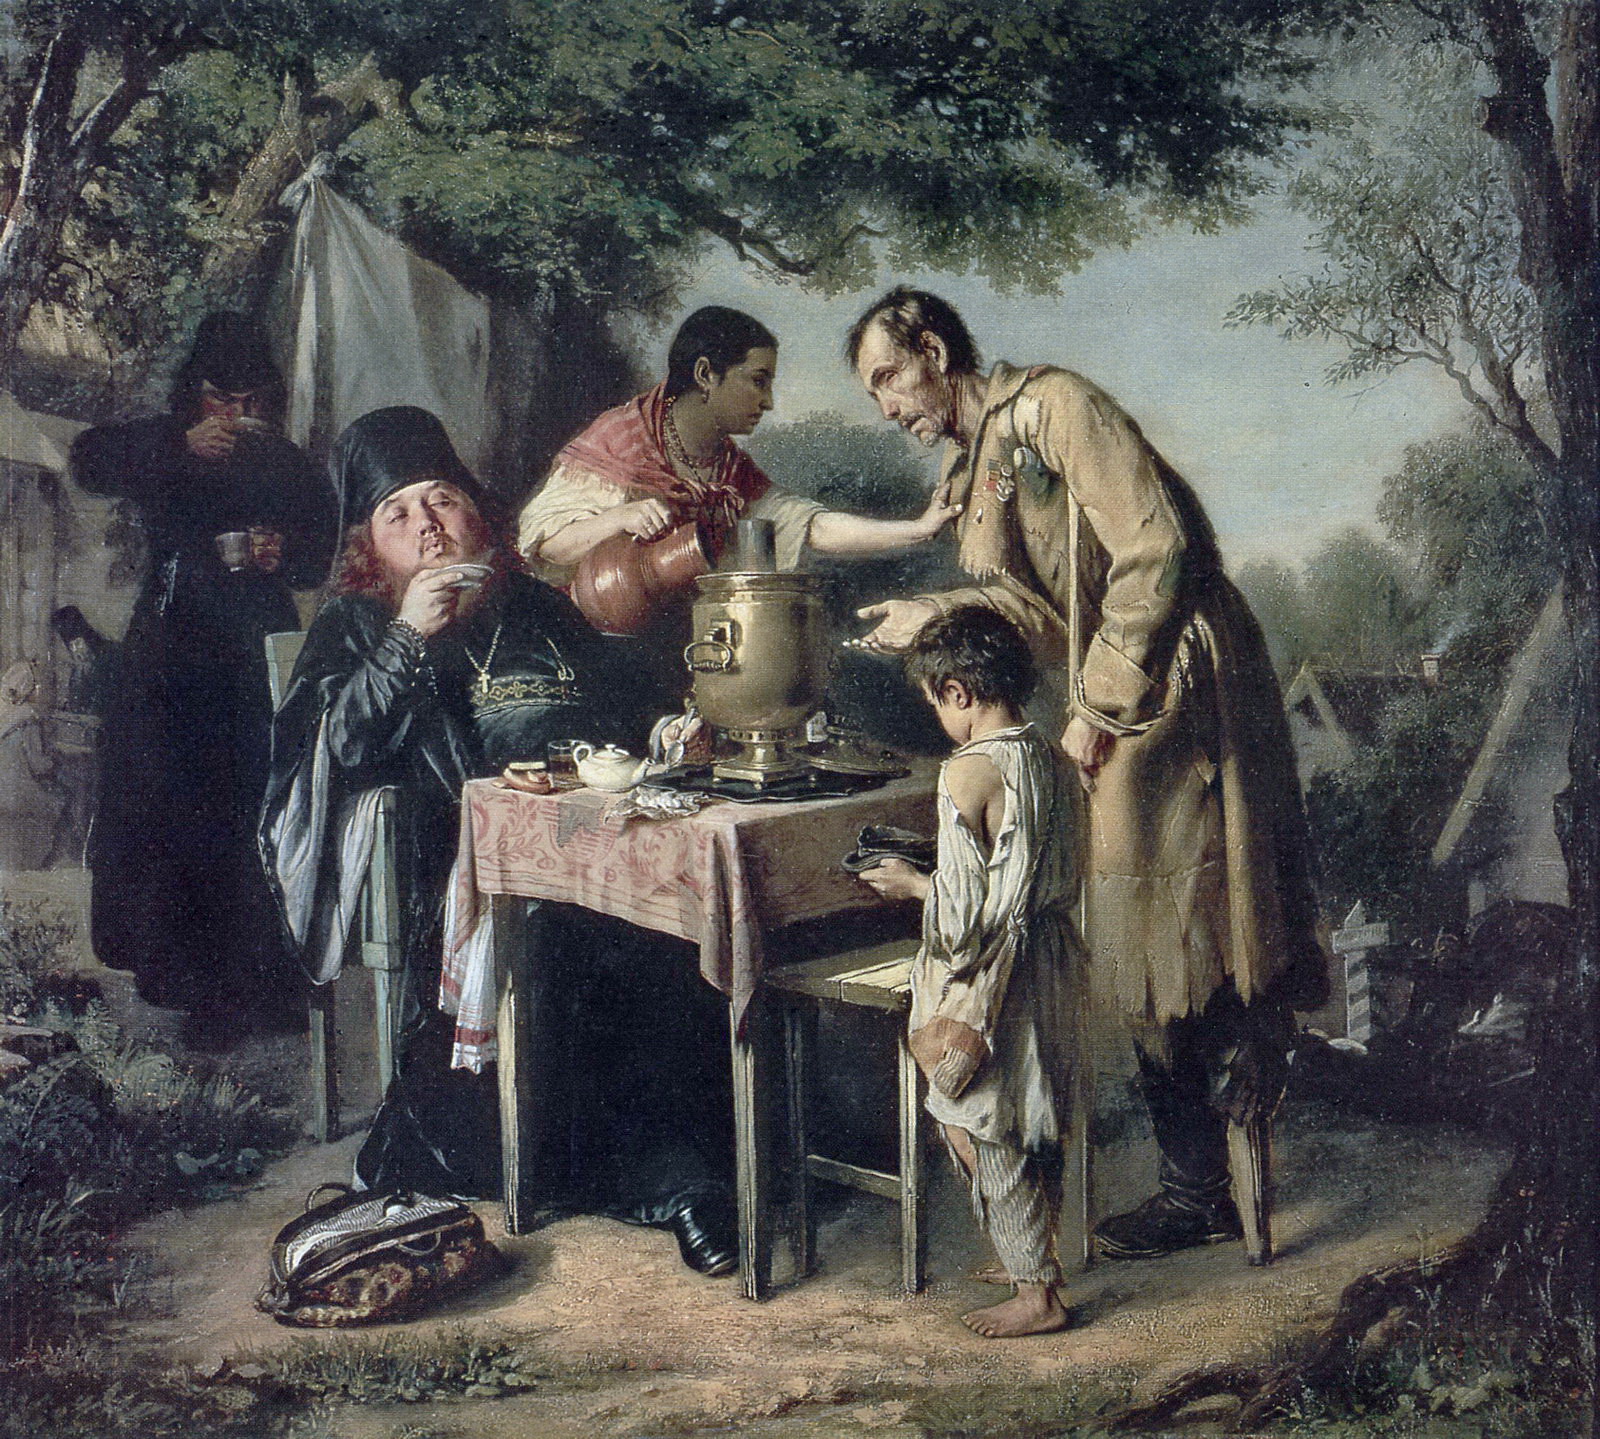 tea-party-at-mytishchi-near-moscow-1862